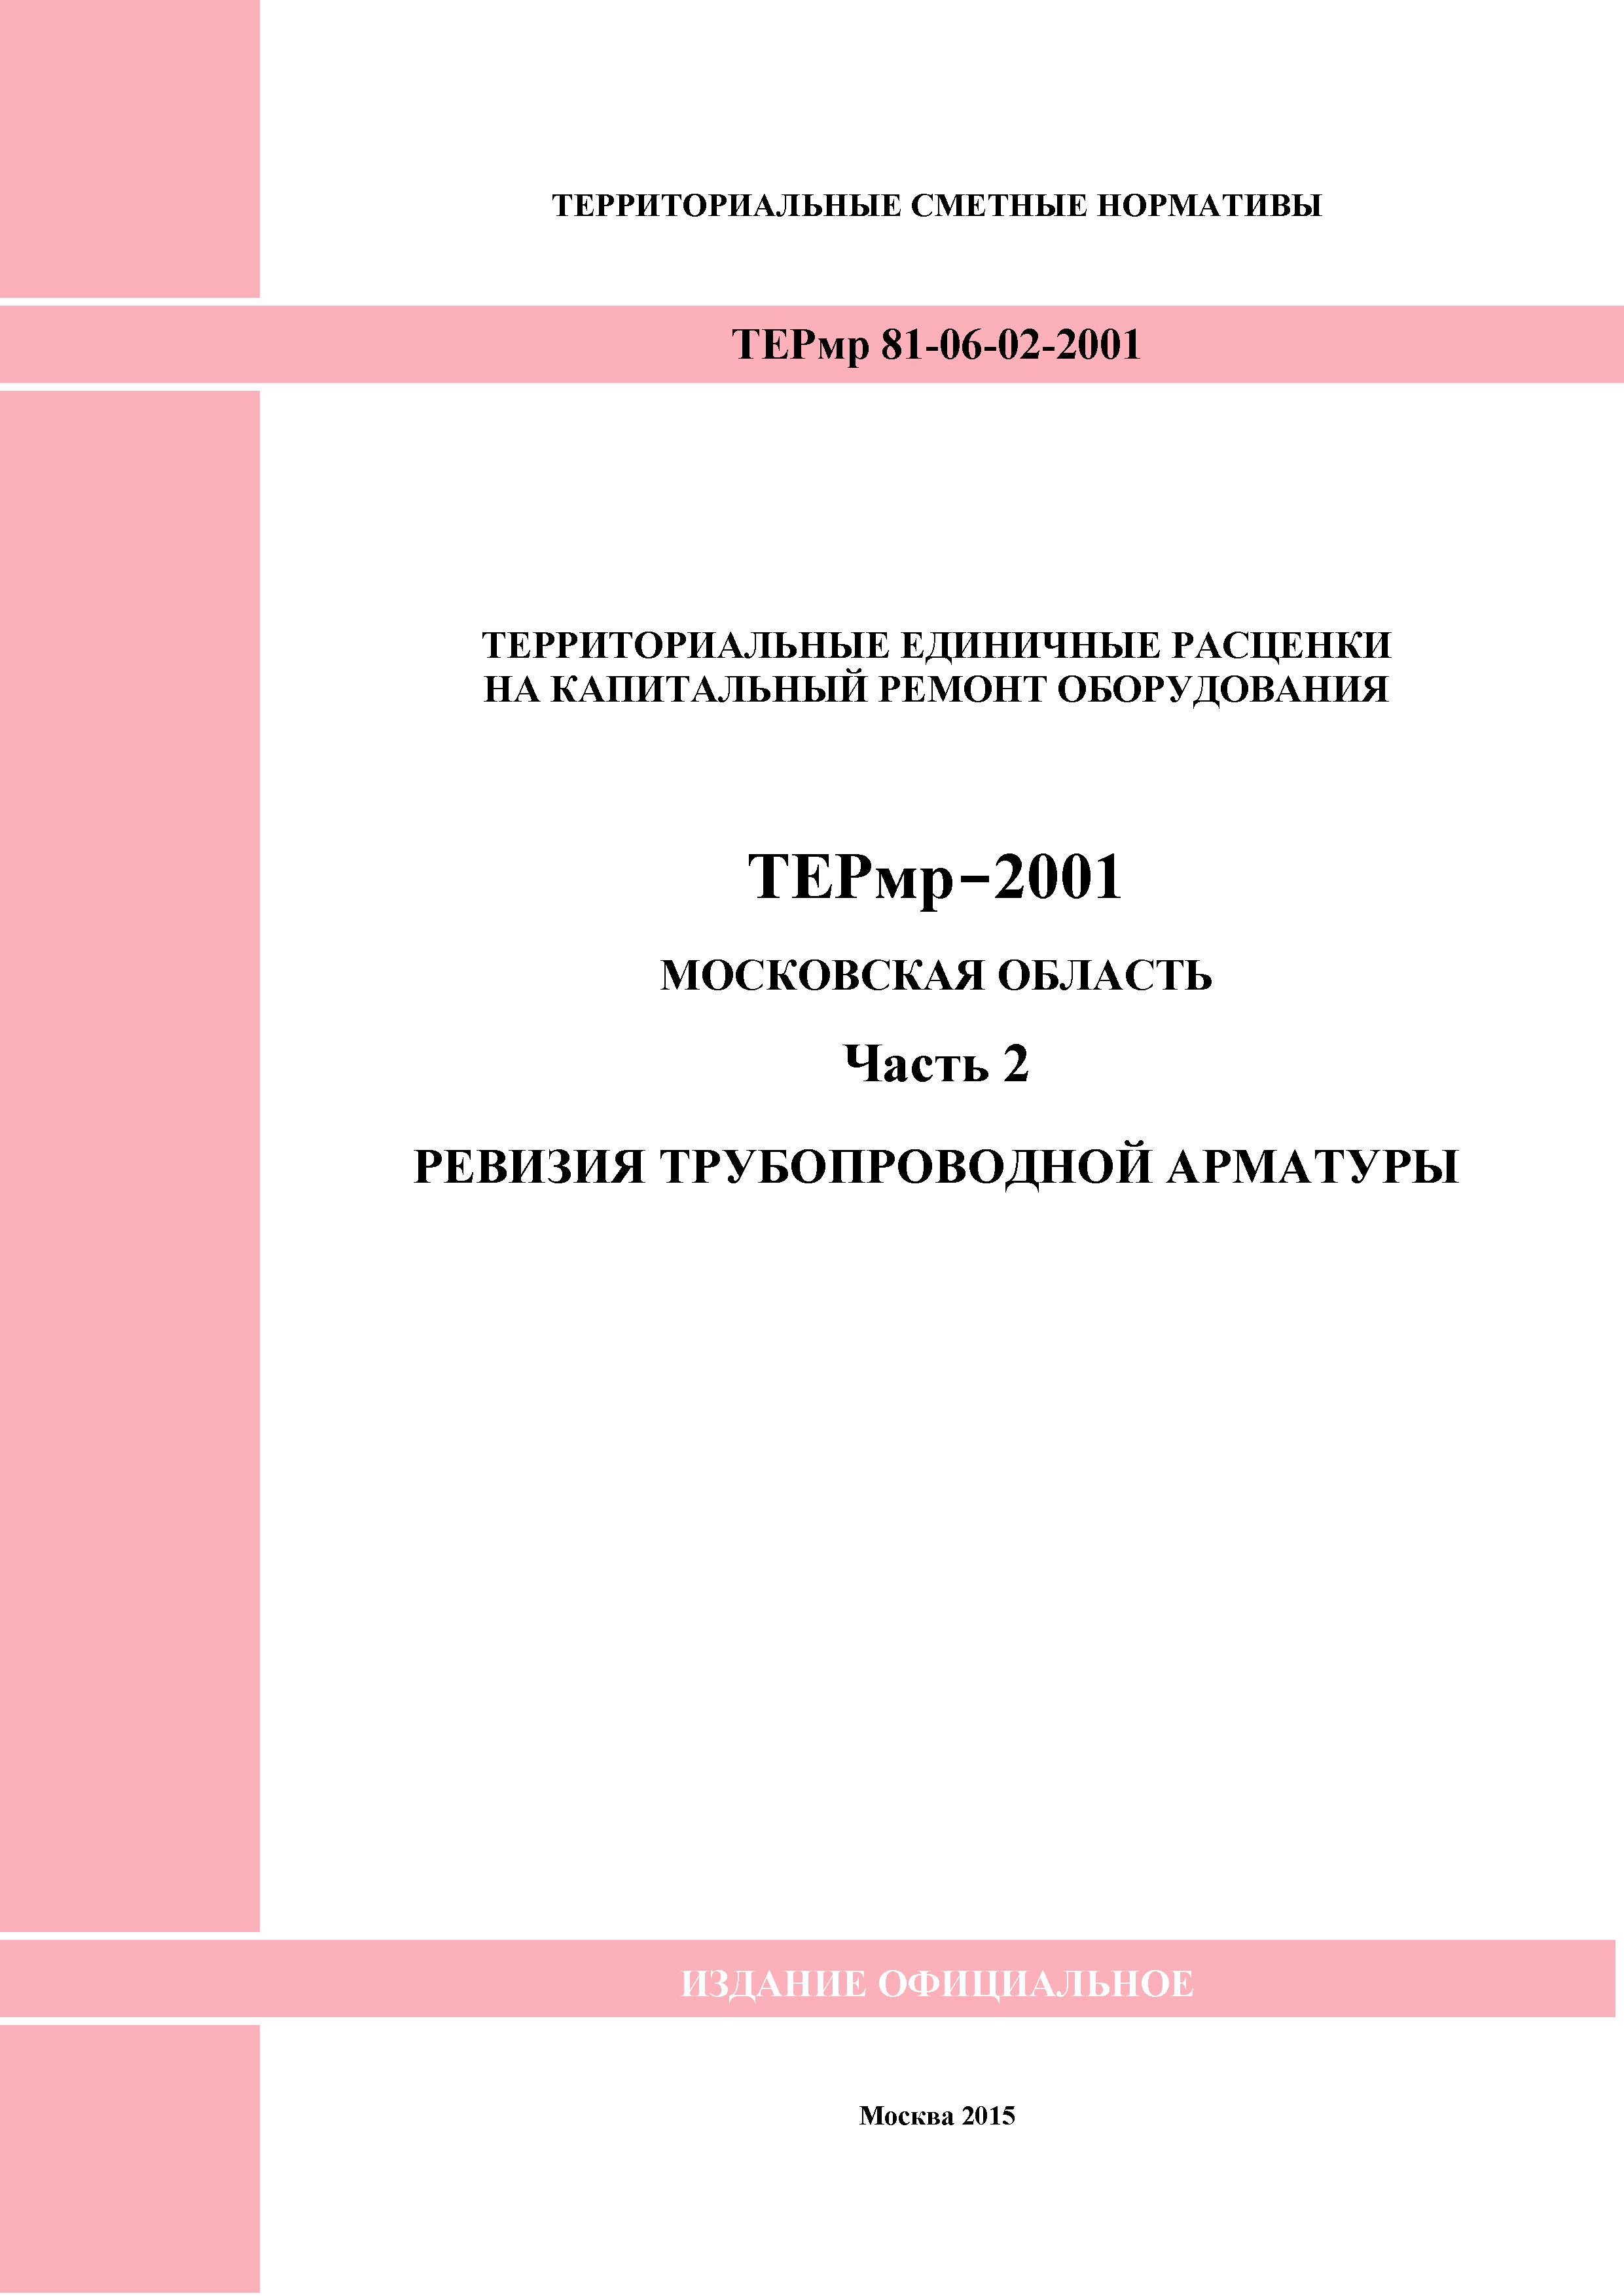 ТЕРмр 2-2001 Московская область